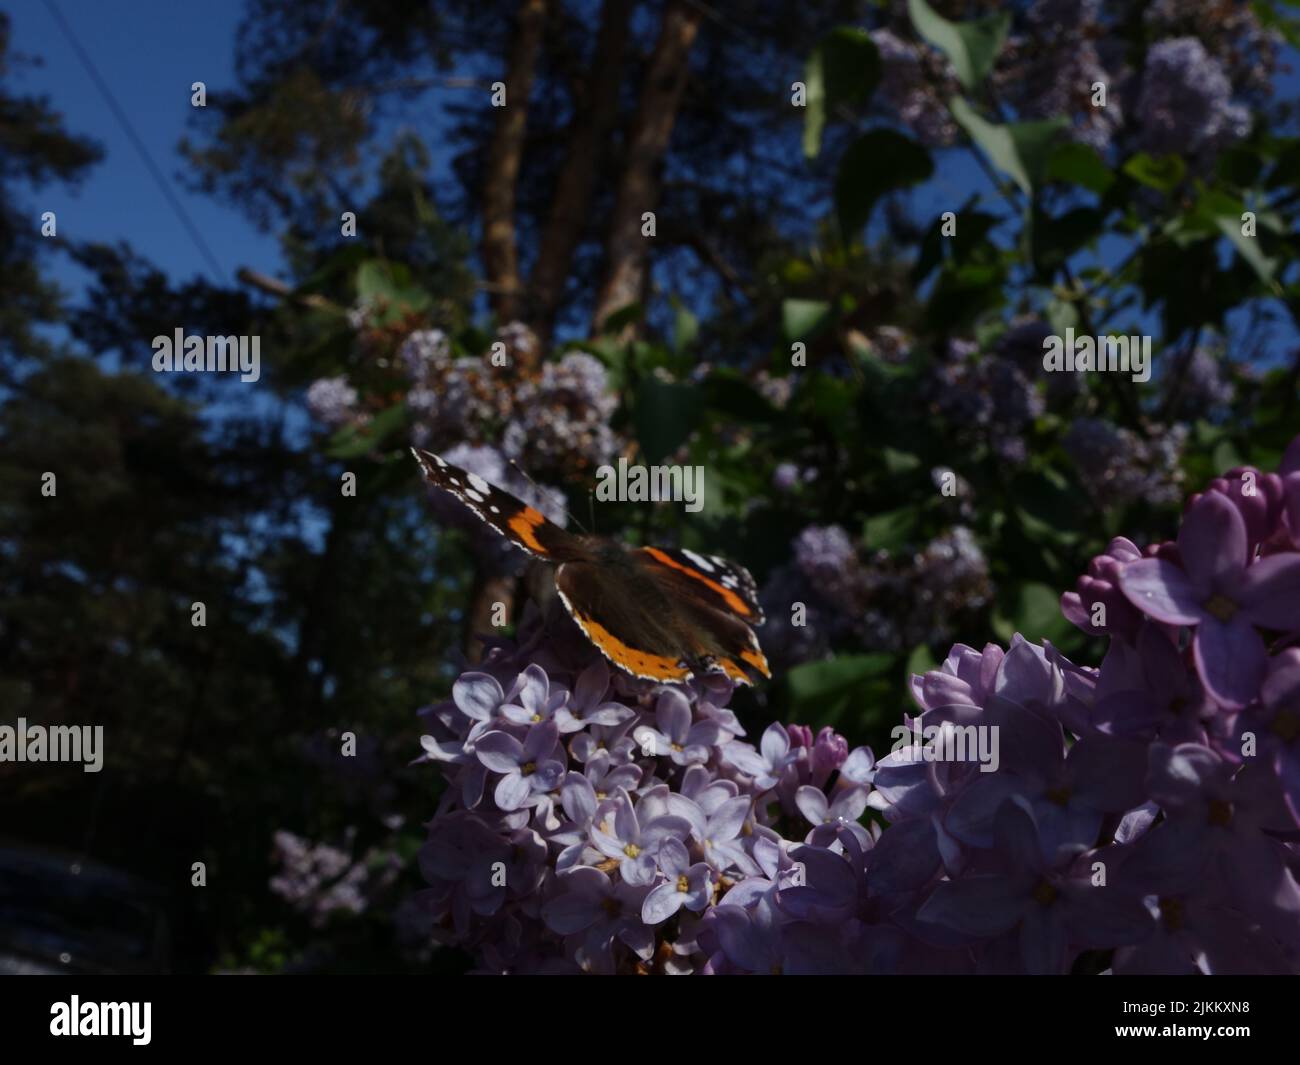 Papillons, Red Admiral, Vanessa Atalanta, s'appréciant parmi les lilas violets en fleurs. Banque D'Images